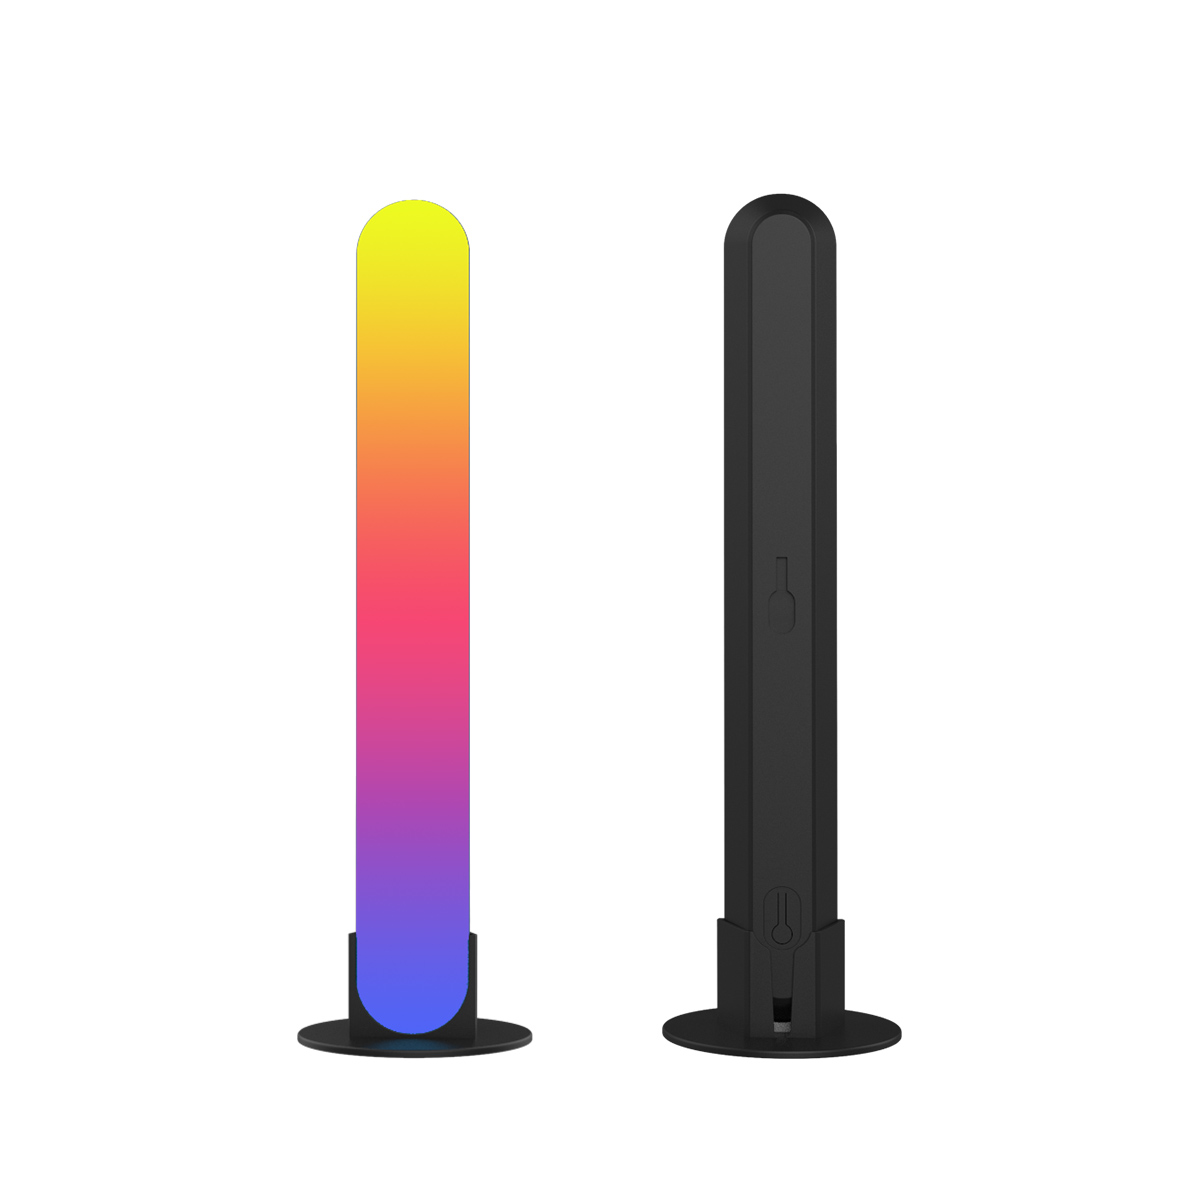 GigaBlue 2x LED Lightbar (TV Ambiente Hintergrundbeleuchtung Smart dimmbar, RGB, App-Steuerung)